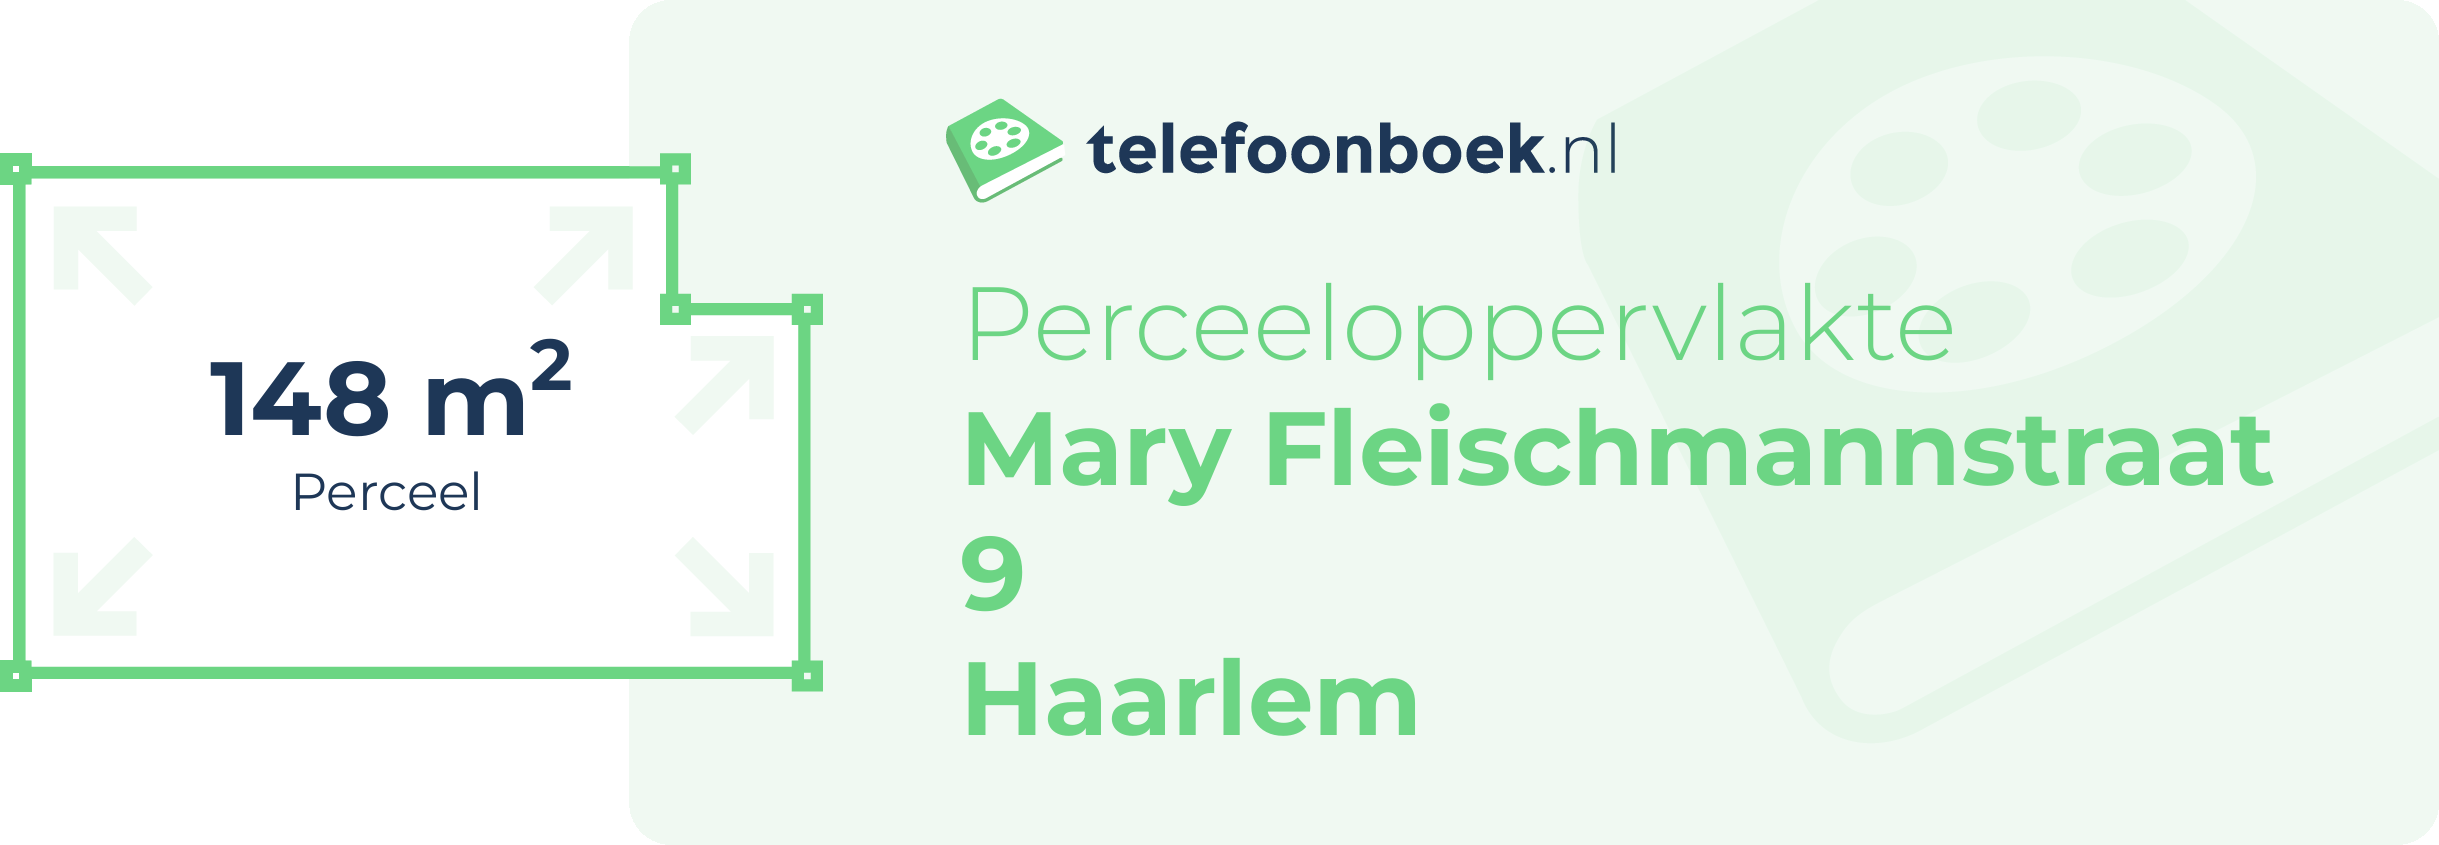 Perceeloppervlakte Mary Fleischmannstraat 9 Haarlem